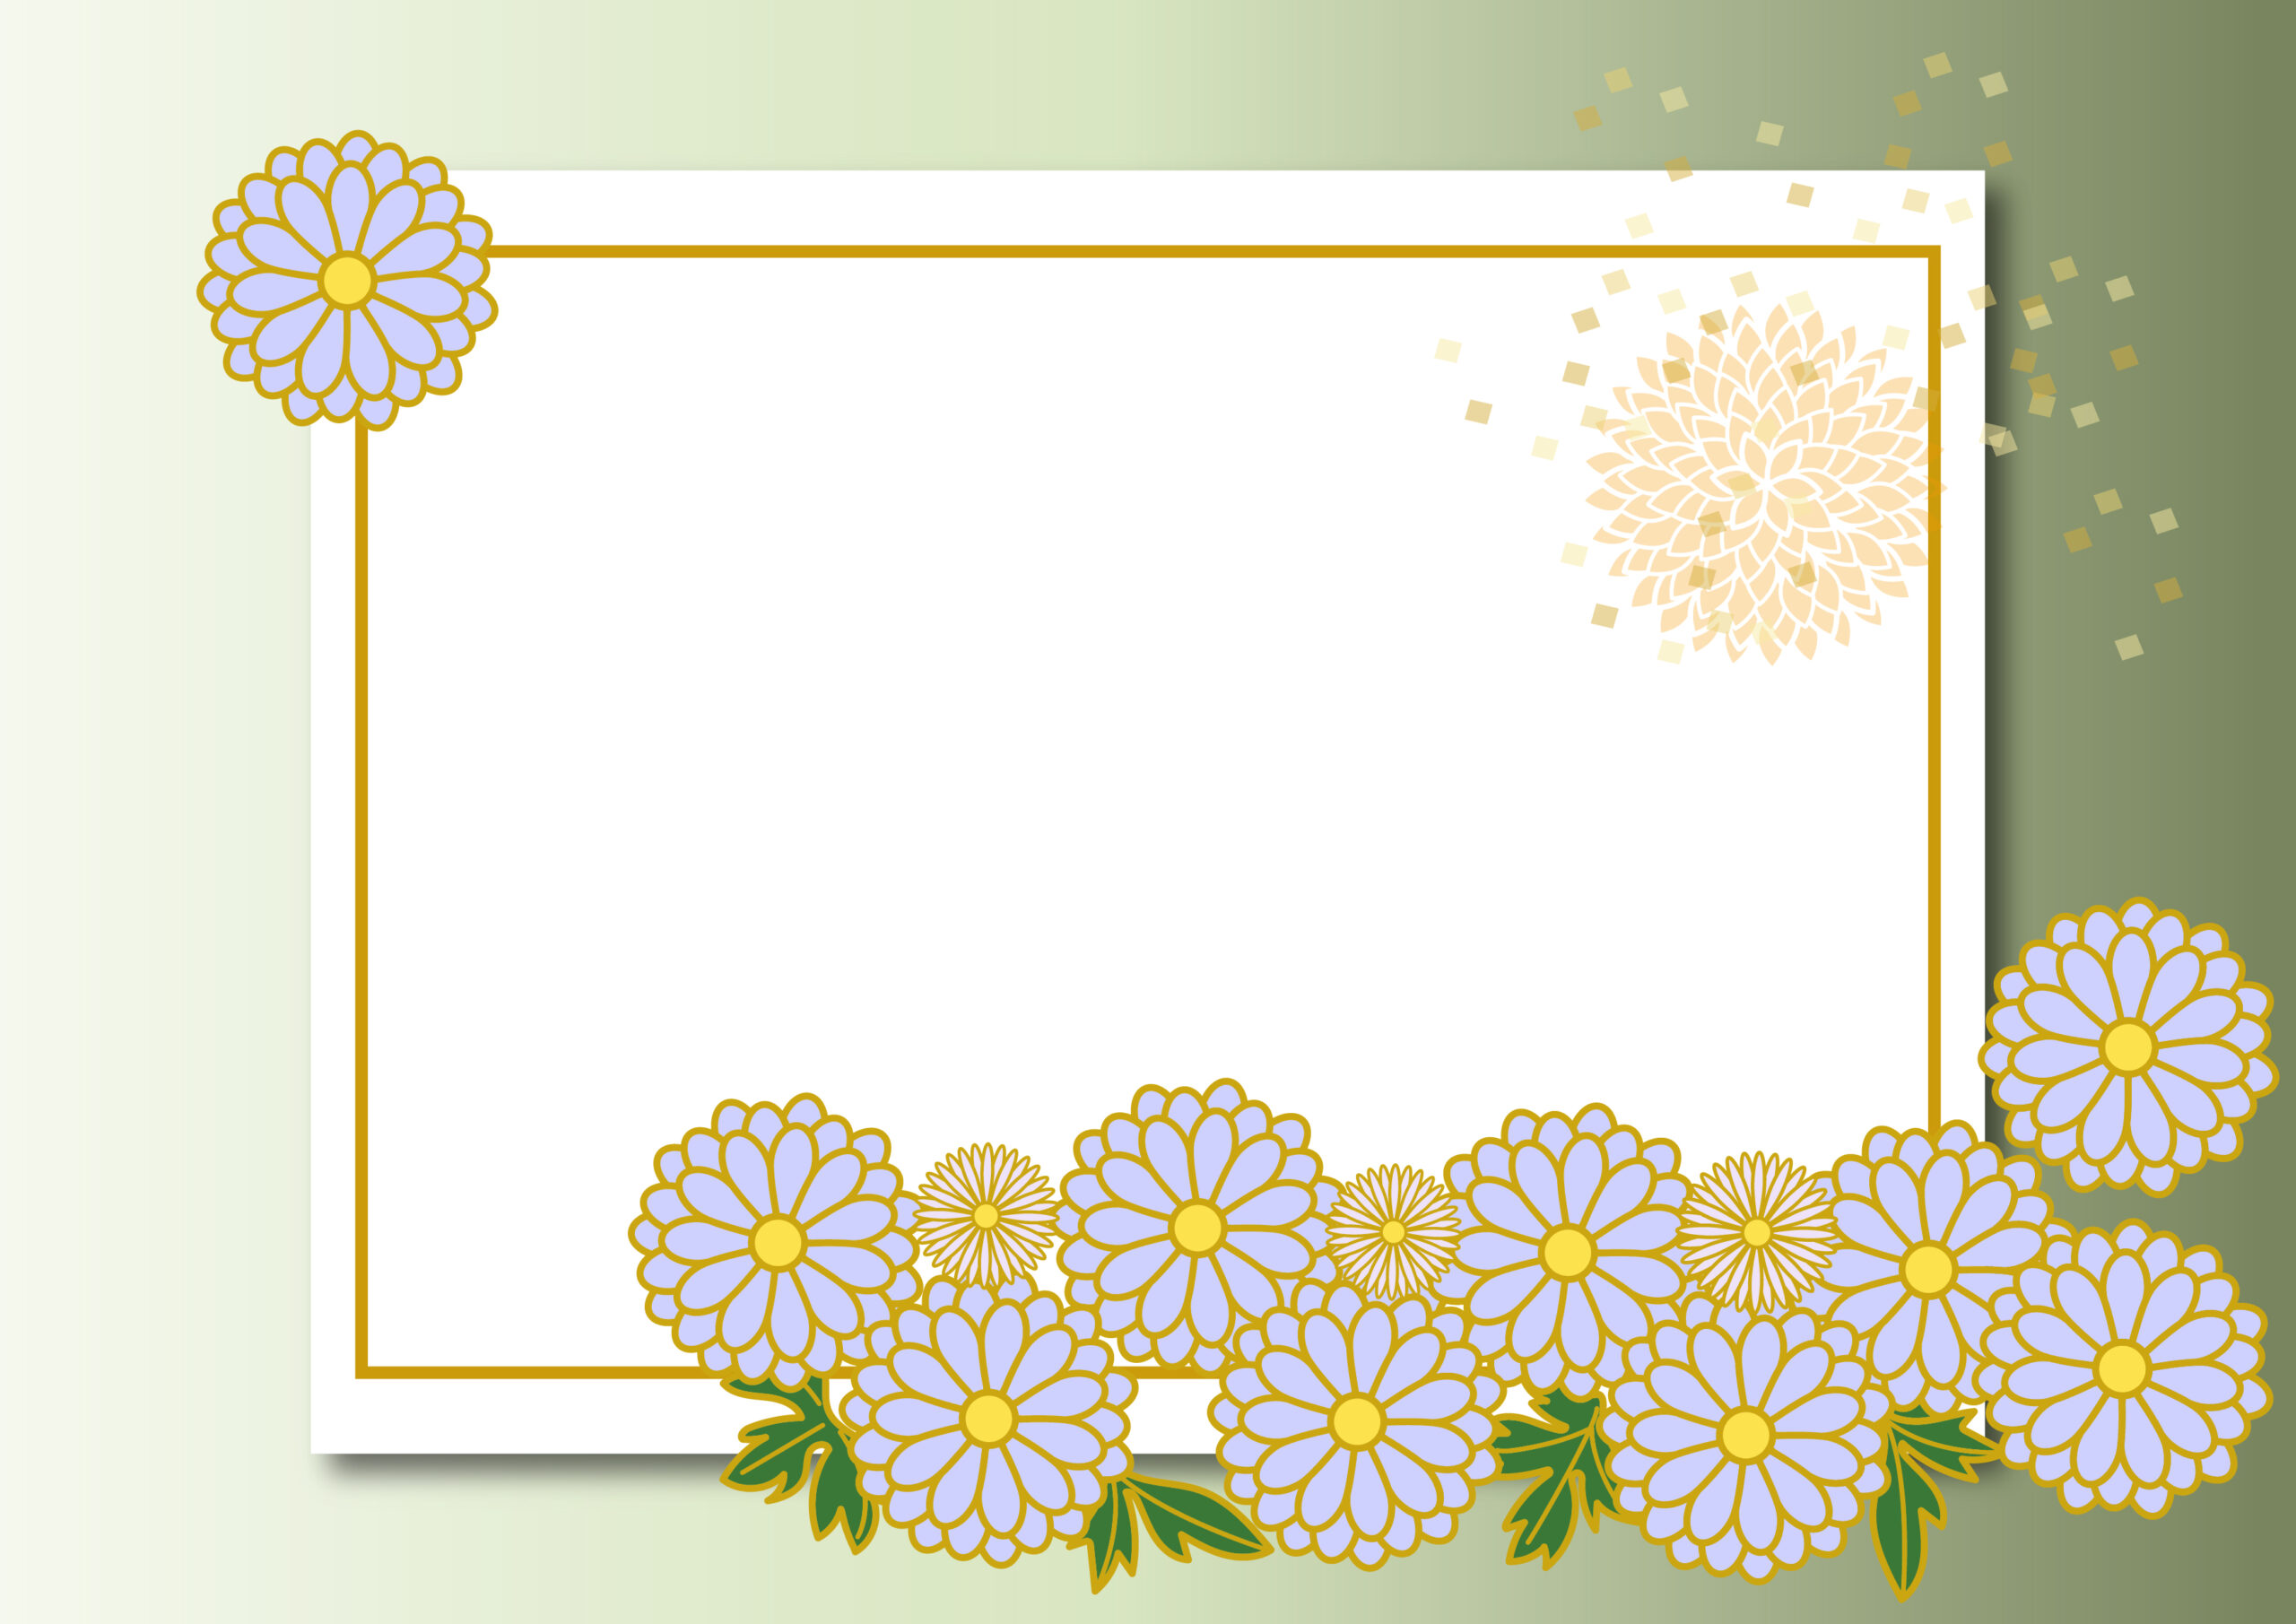 お悔やみの手紙やメール、情報案内の張り紙などに使いやすいデザインのイラストフレームになり、菊の花が描かれた綺麗な飾り枠となっております。上品で落ち着いたデザインのテンプレートで、印刷・画像どちらでもご利用いただけます。ダウンロード：